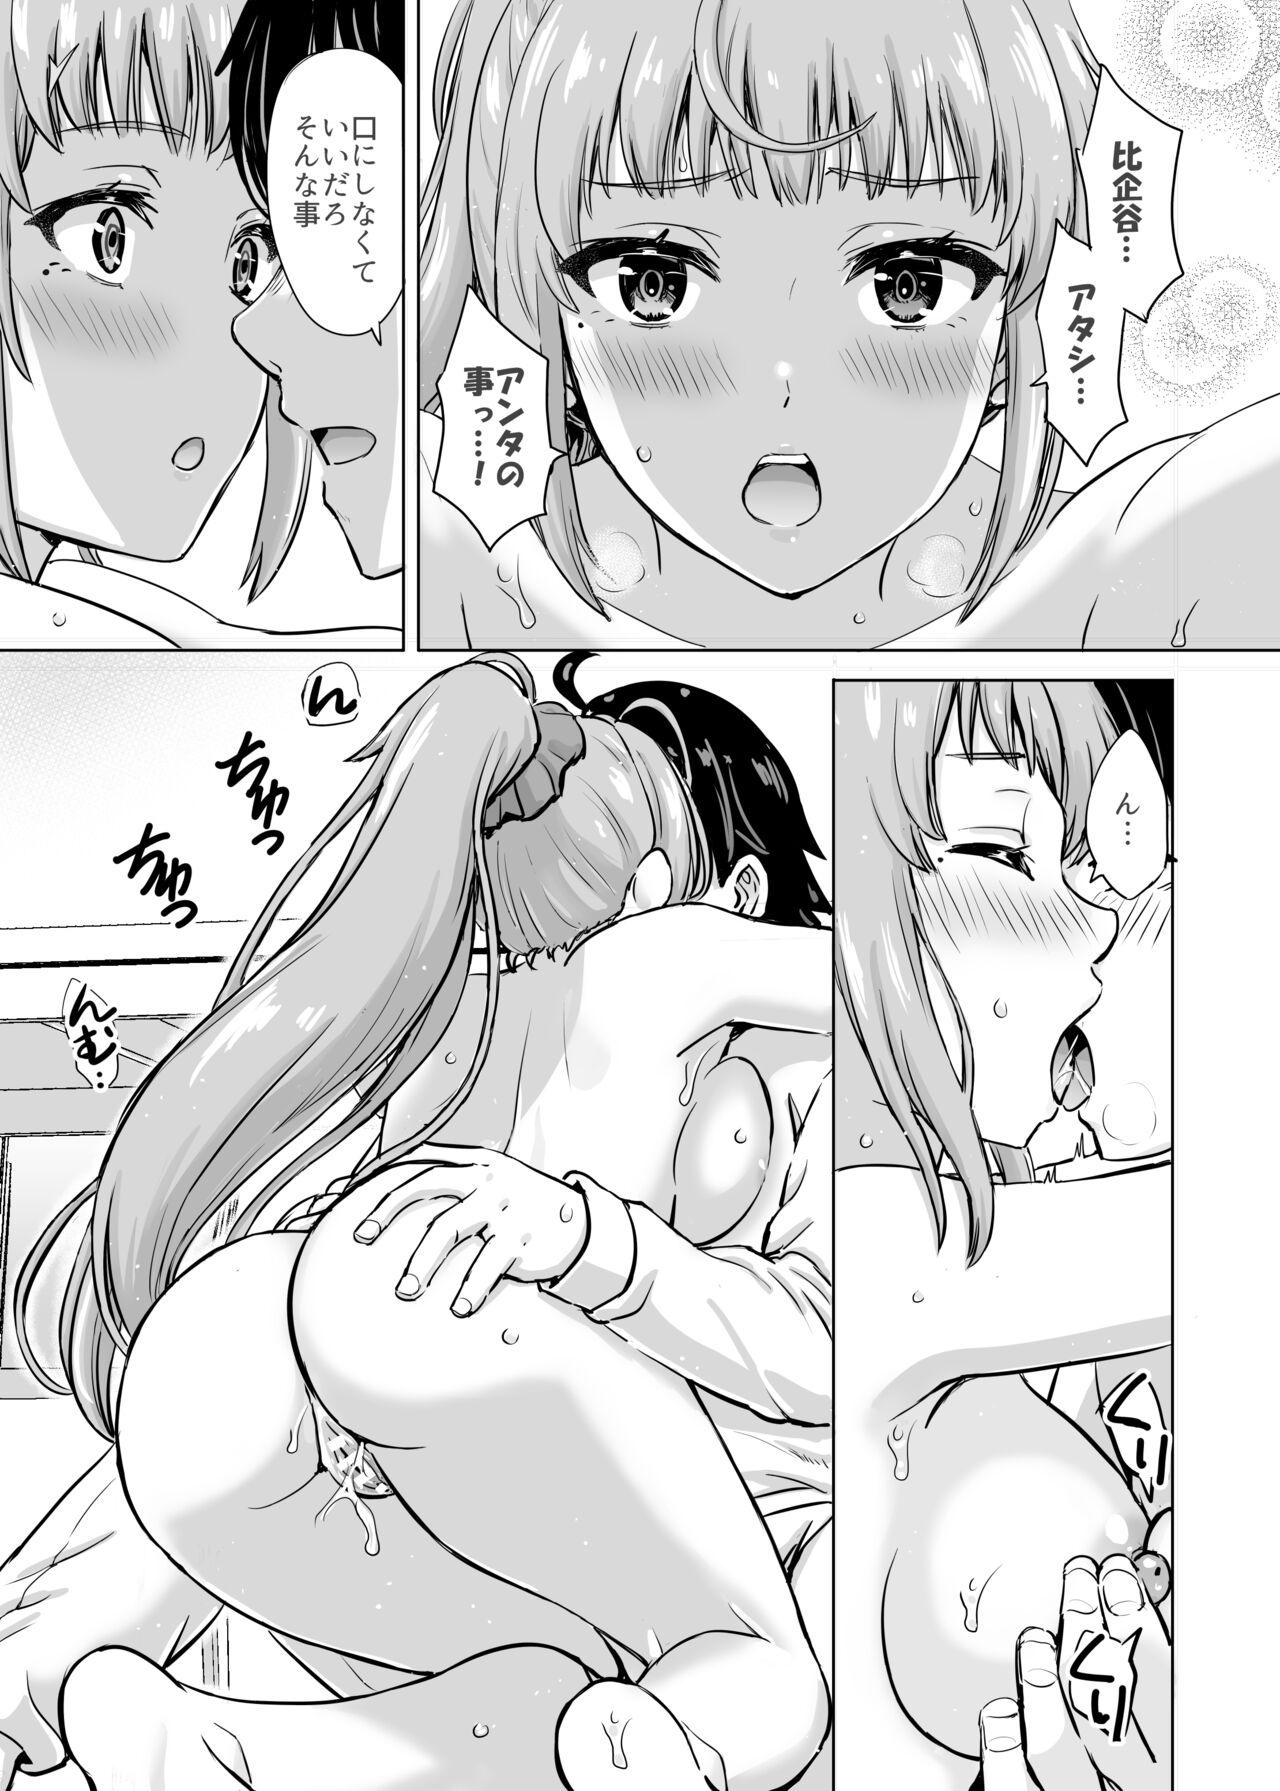 Madura あーしさんサキサキ漫画 - Yahari ore no seishun love come wa machigatteiru Free Blow Job Porn - Page 10